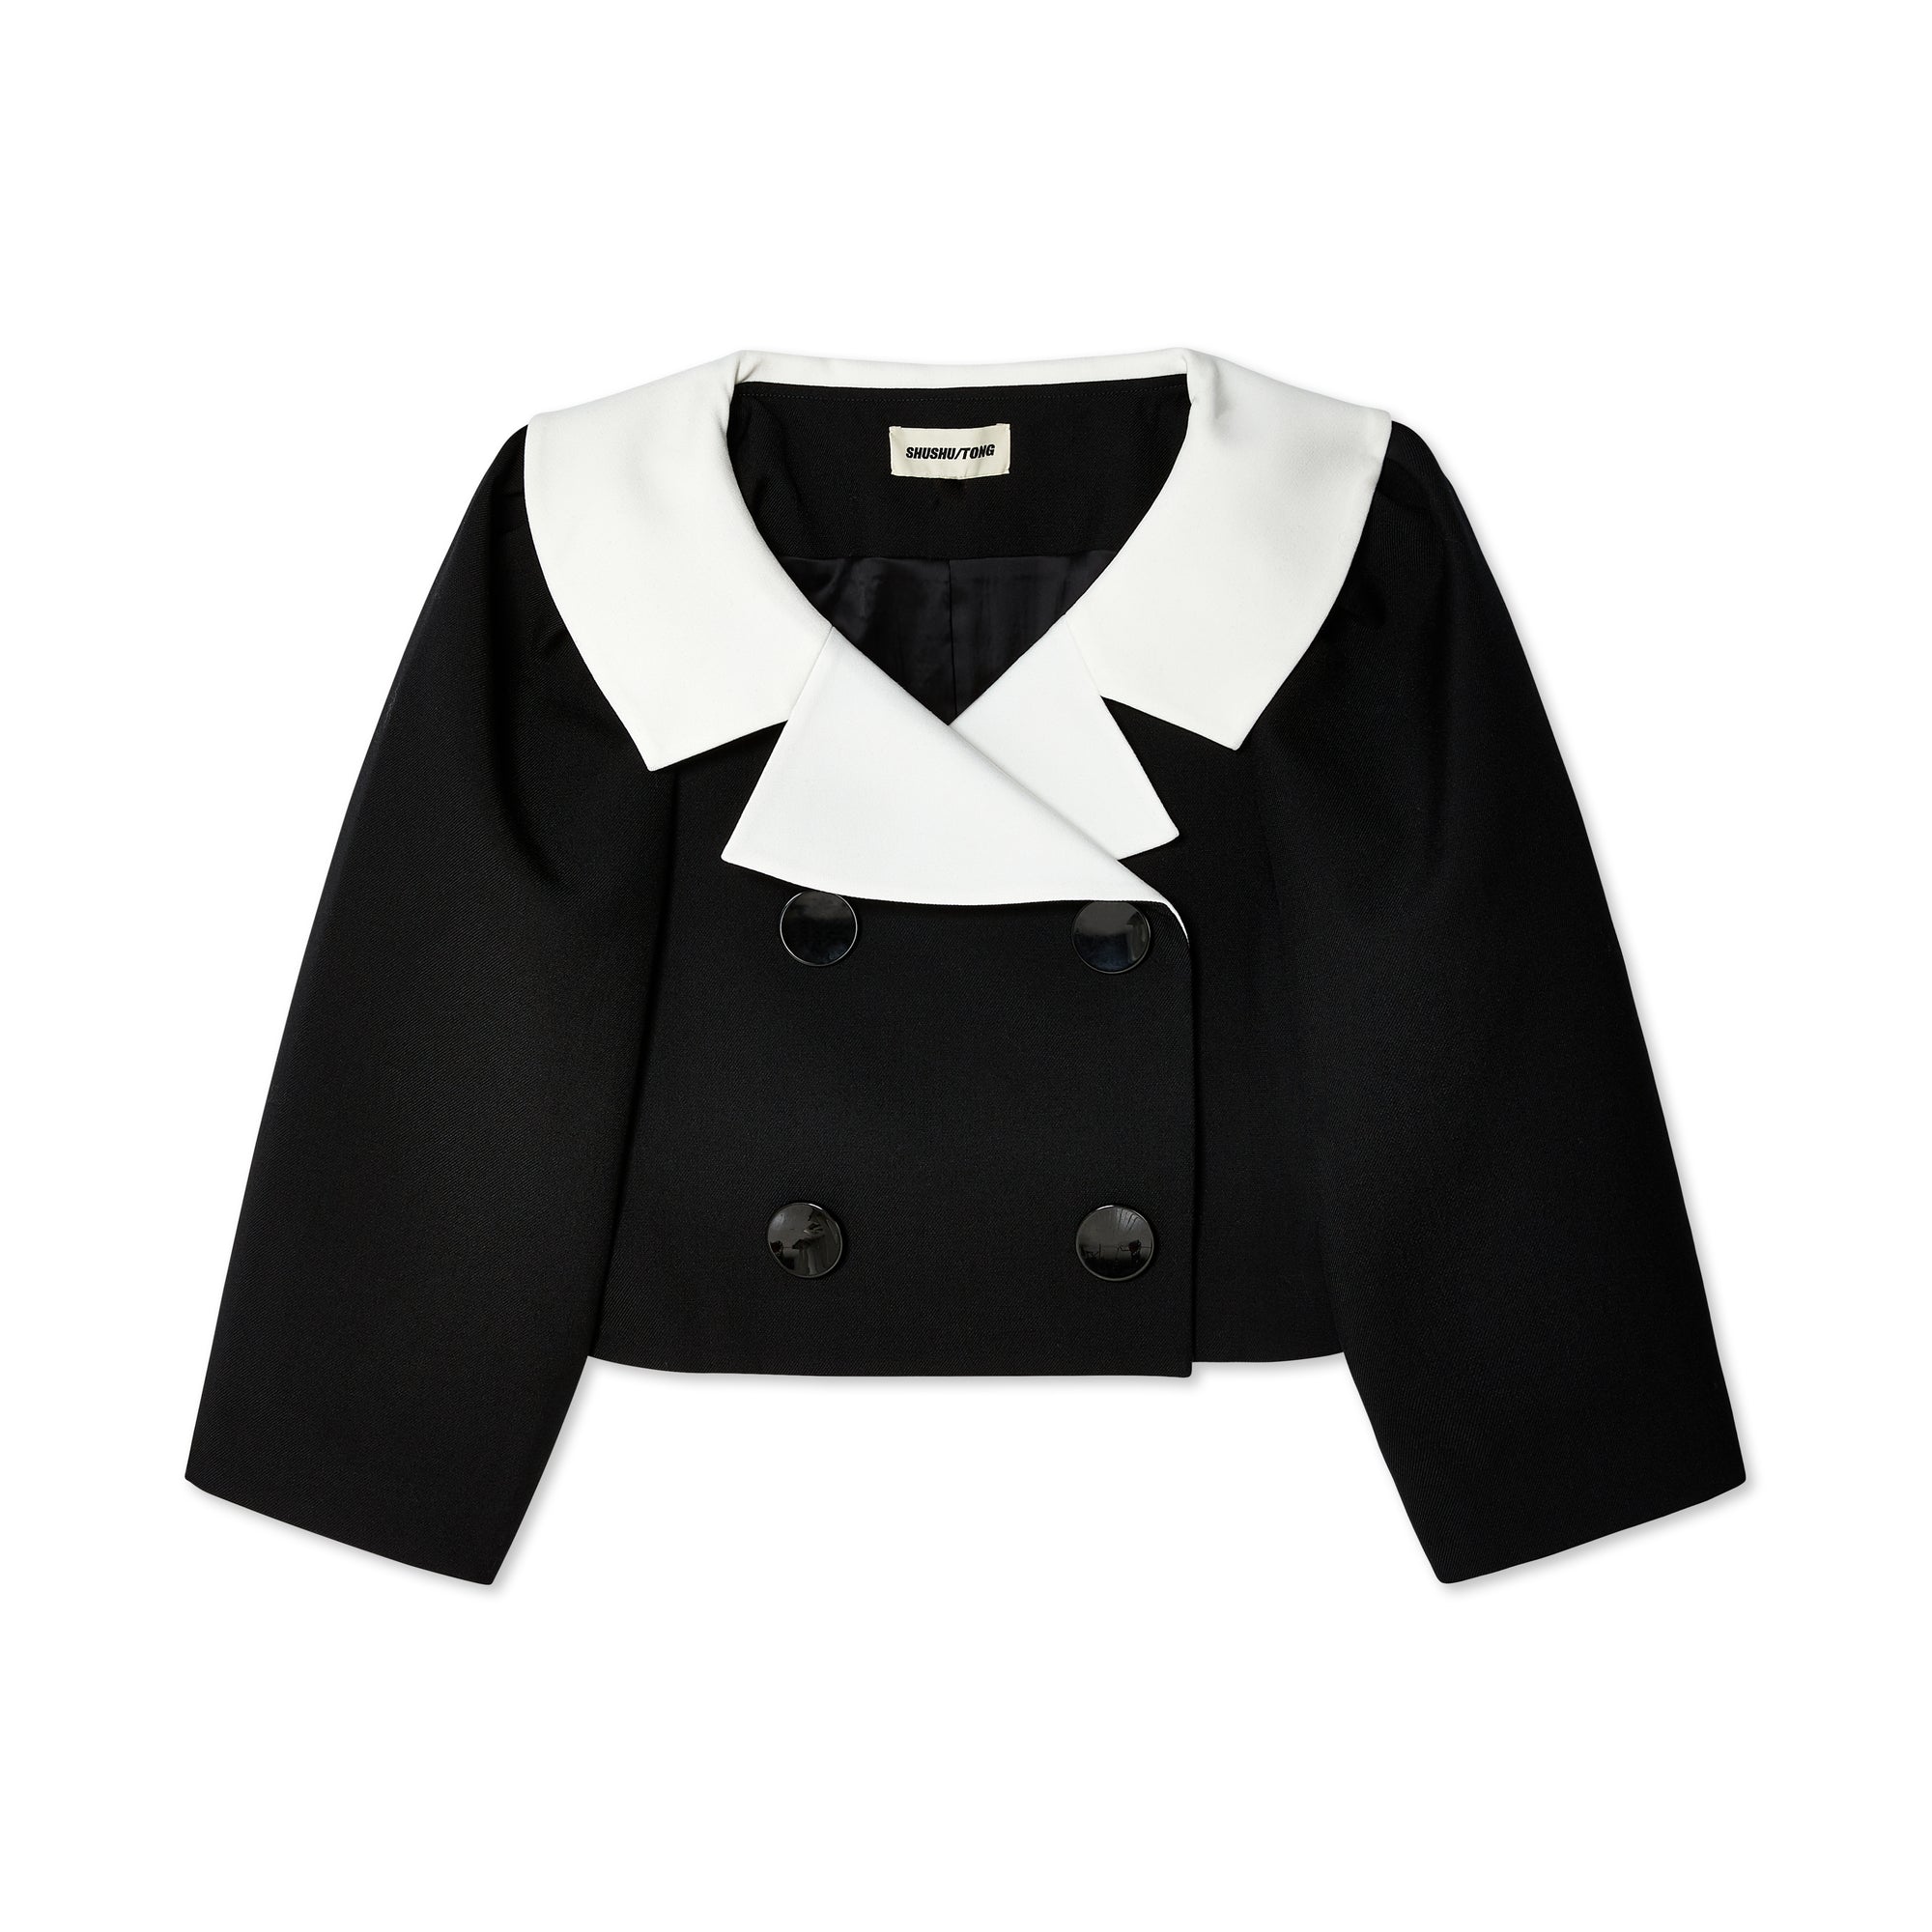 Shushu/Tong - Women's Puff Sleeve Jacket - (Black) view 1